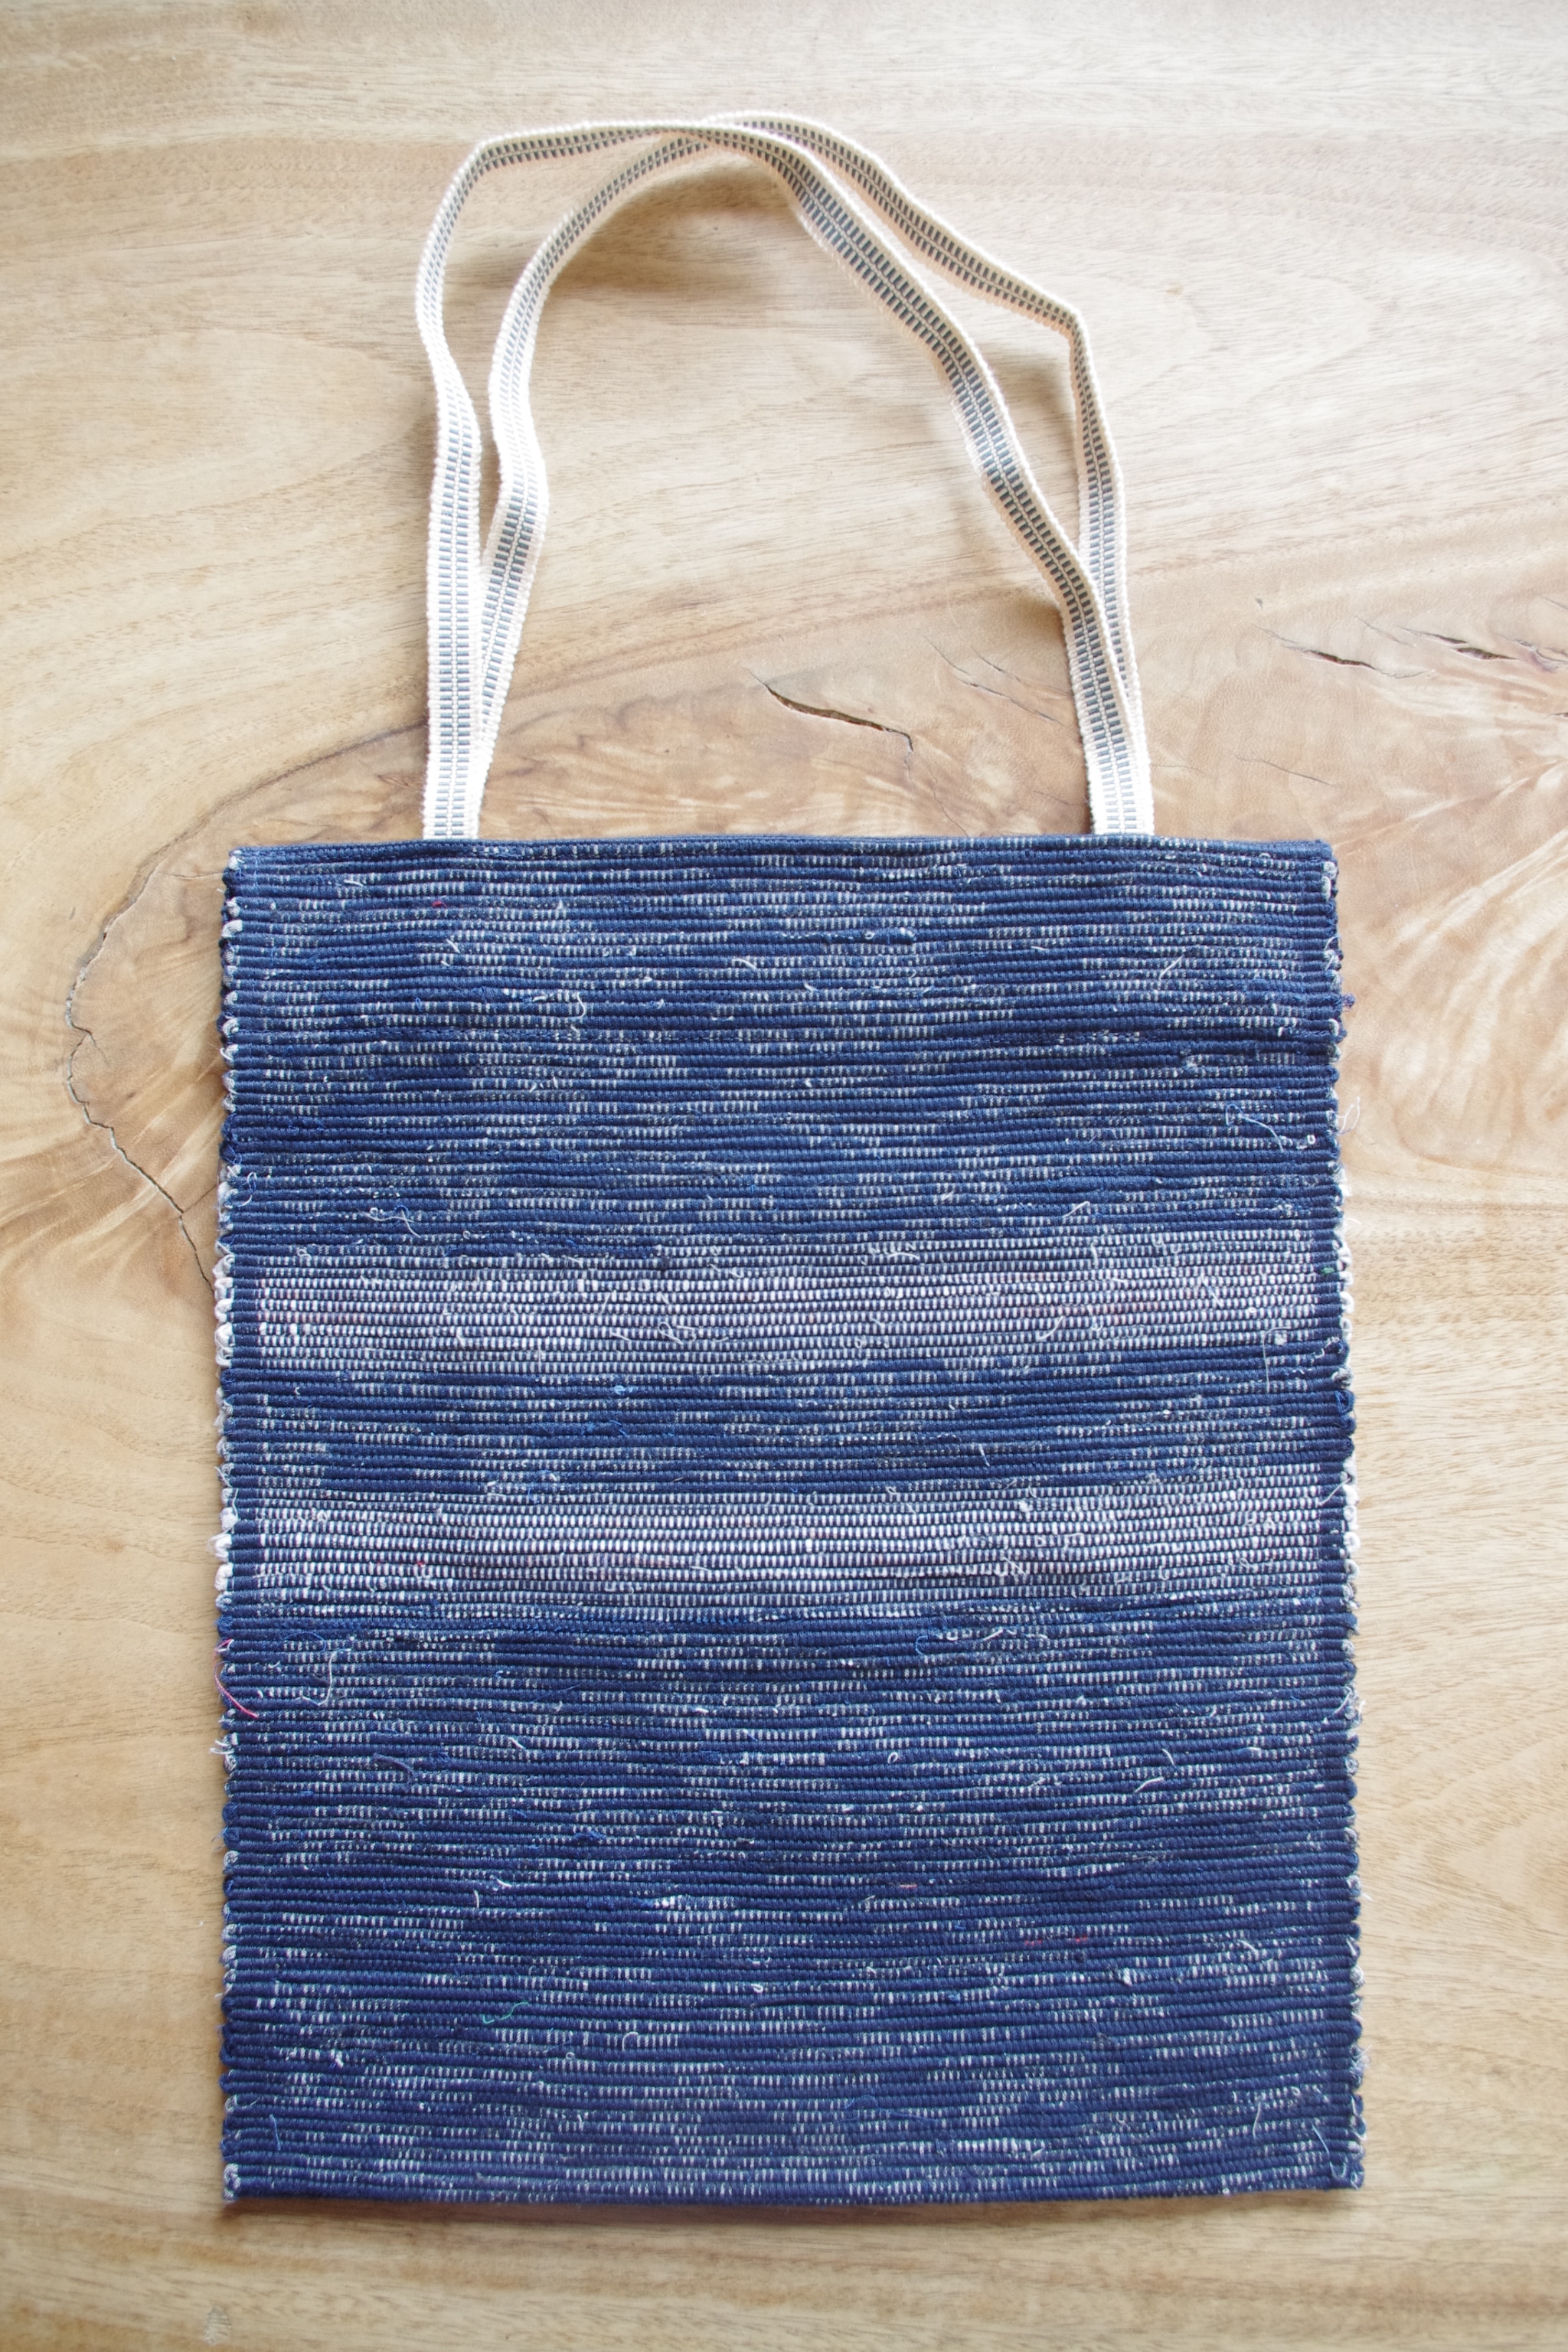 ファイルが入る 紺色のフラットバッグ 内側にポケットあり 木綿 裂き織り Iichi ハンドメイド クラフト作品 手仕事品の通販